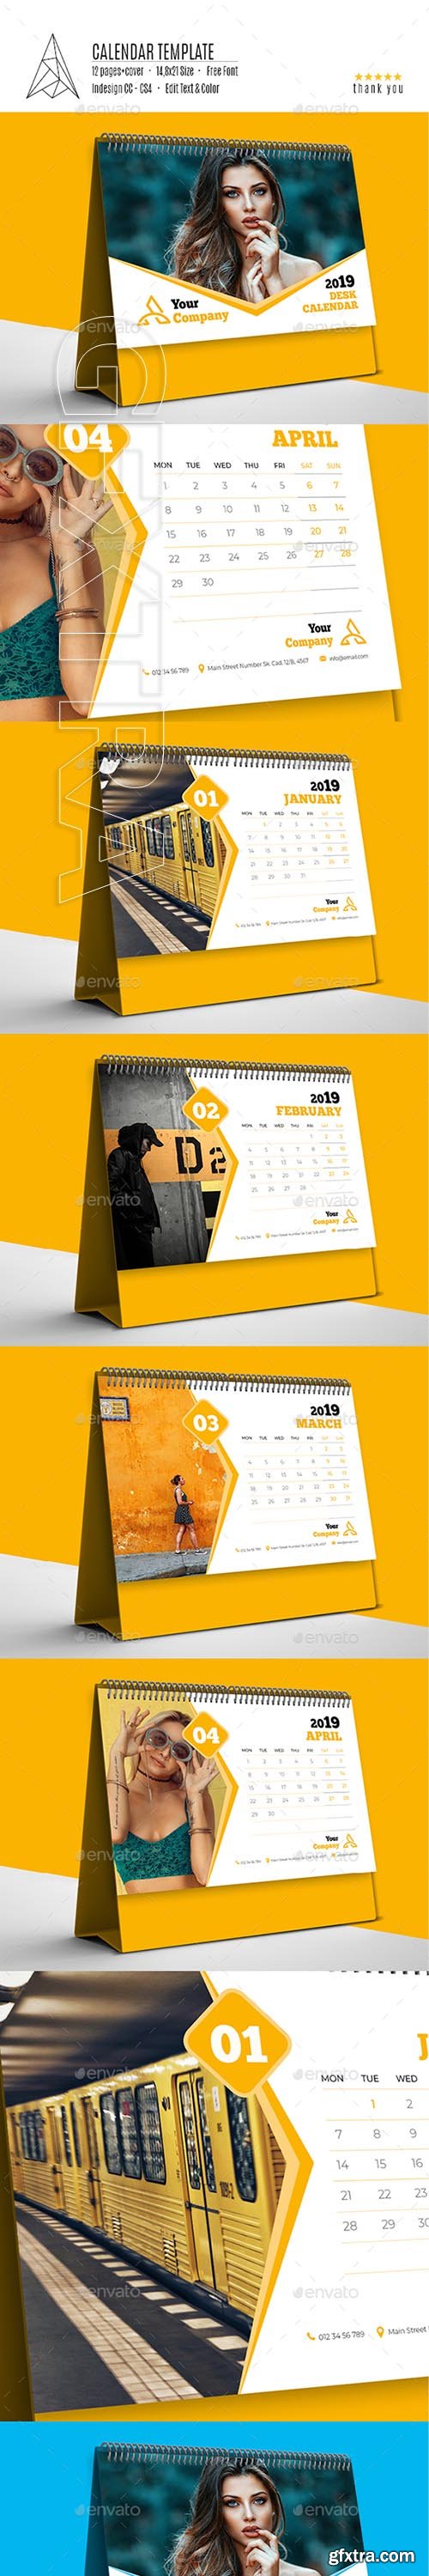 GraphicRiver - Desk Calendar 2019 22825595